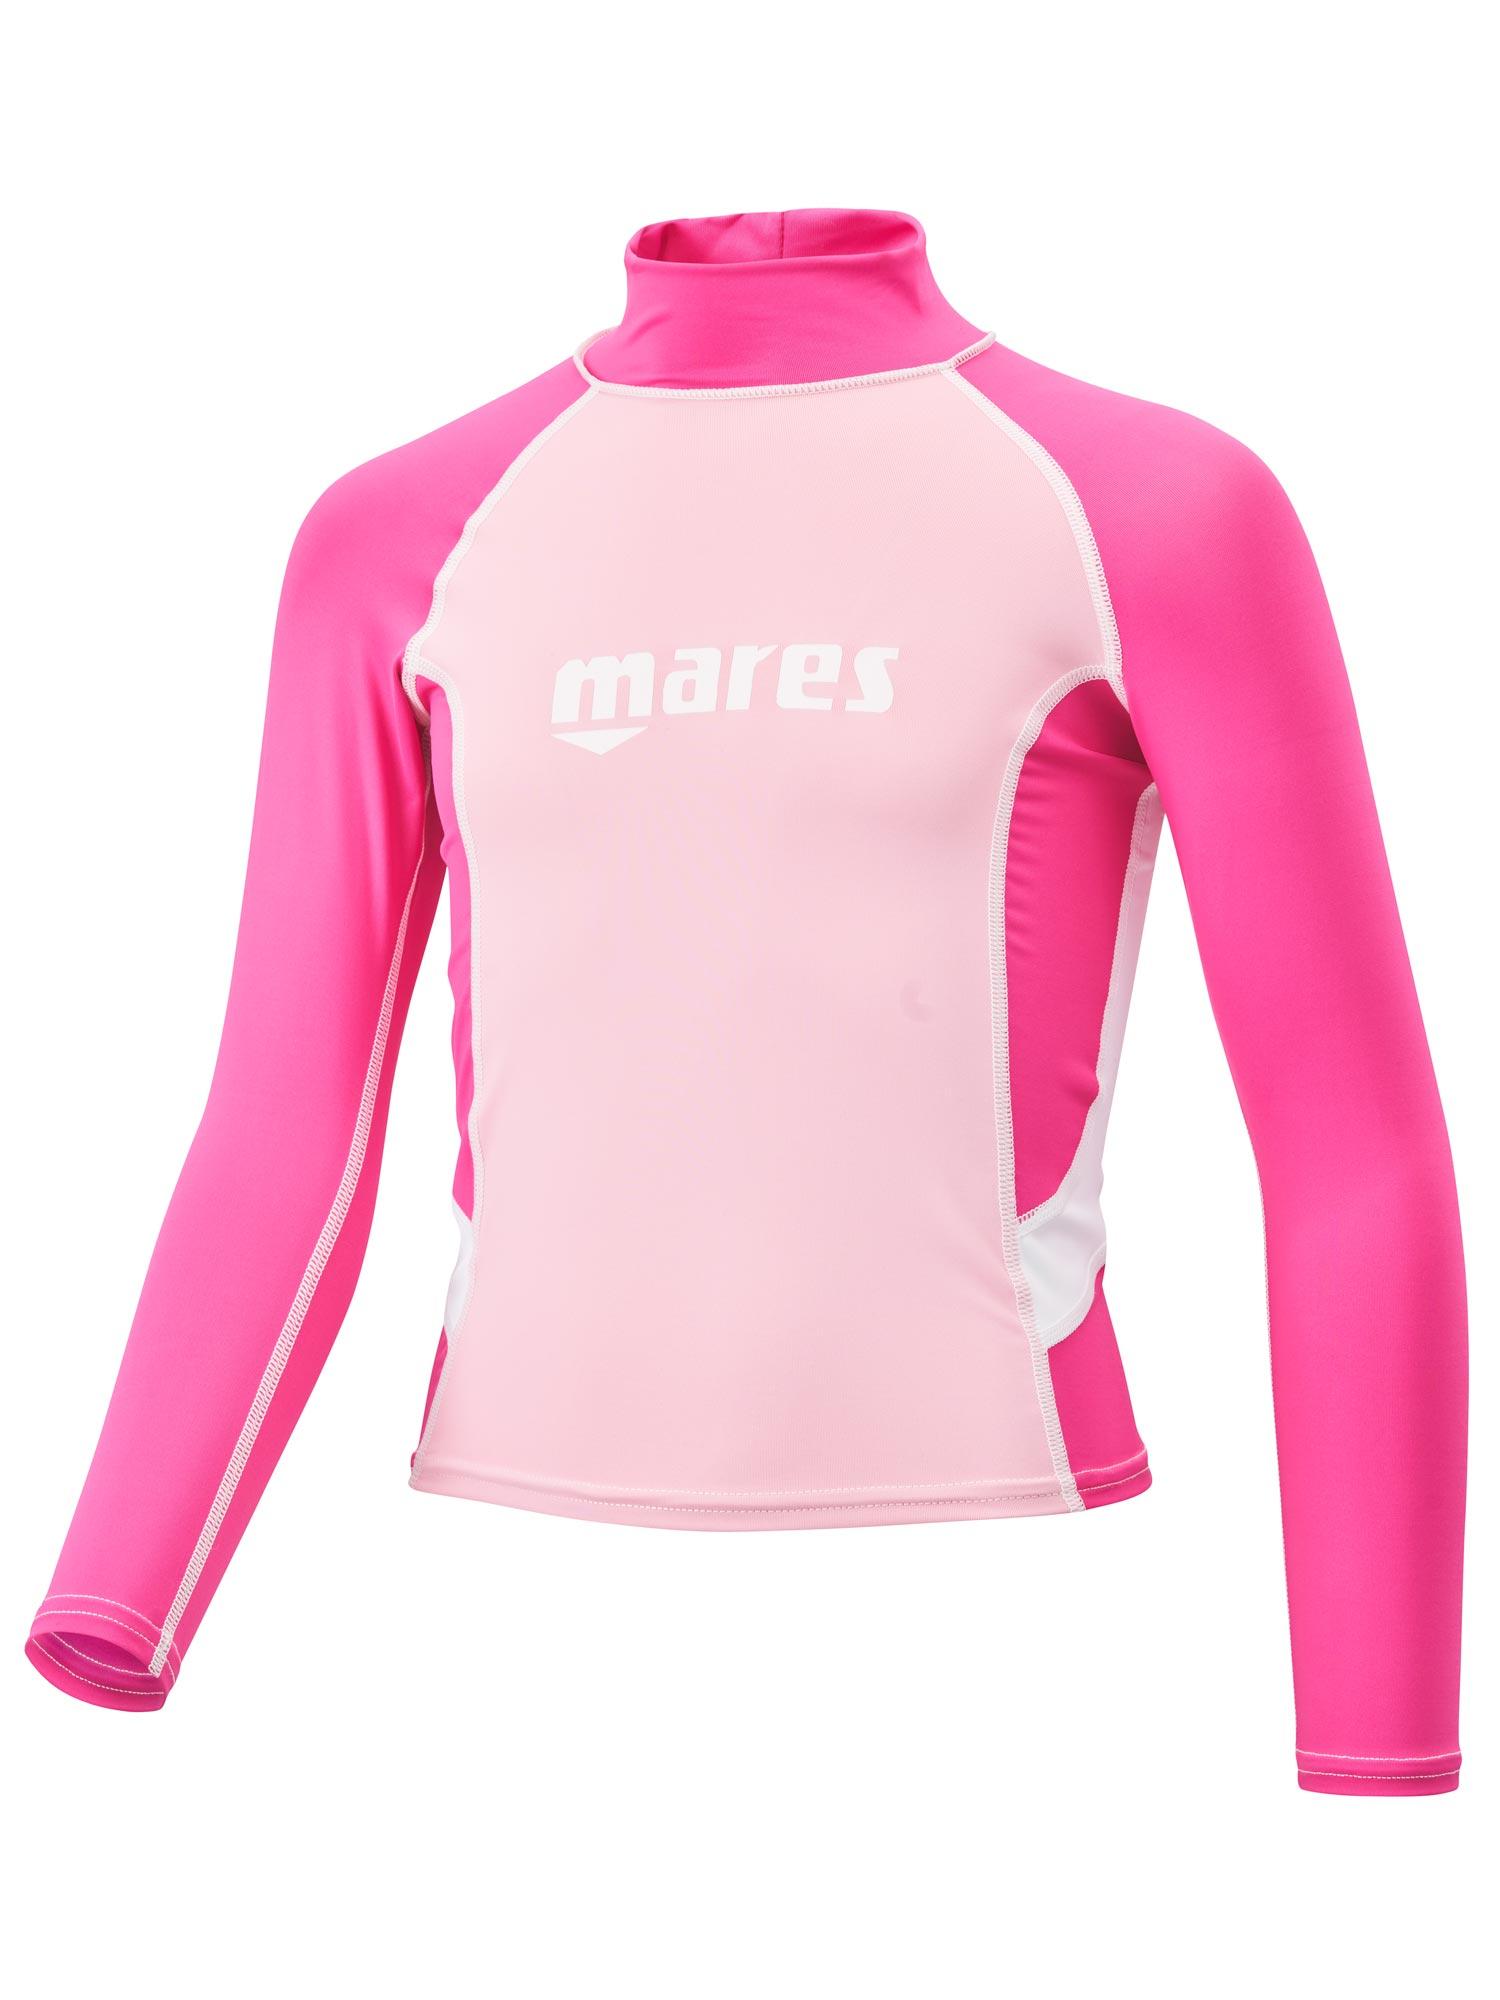 Selected image for MARES Majica za plivanje za devojčice roze